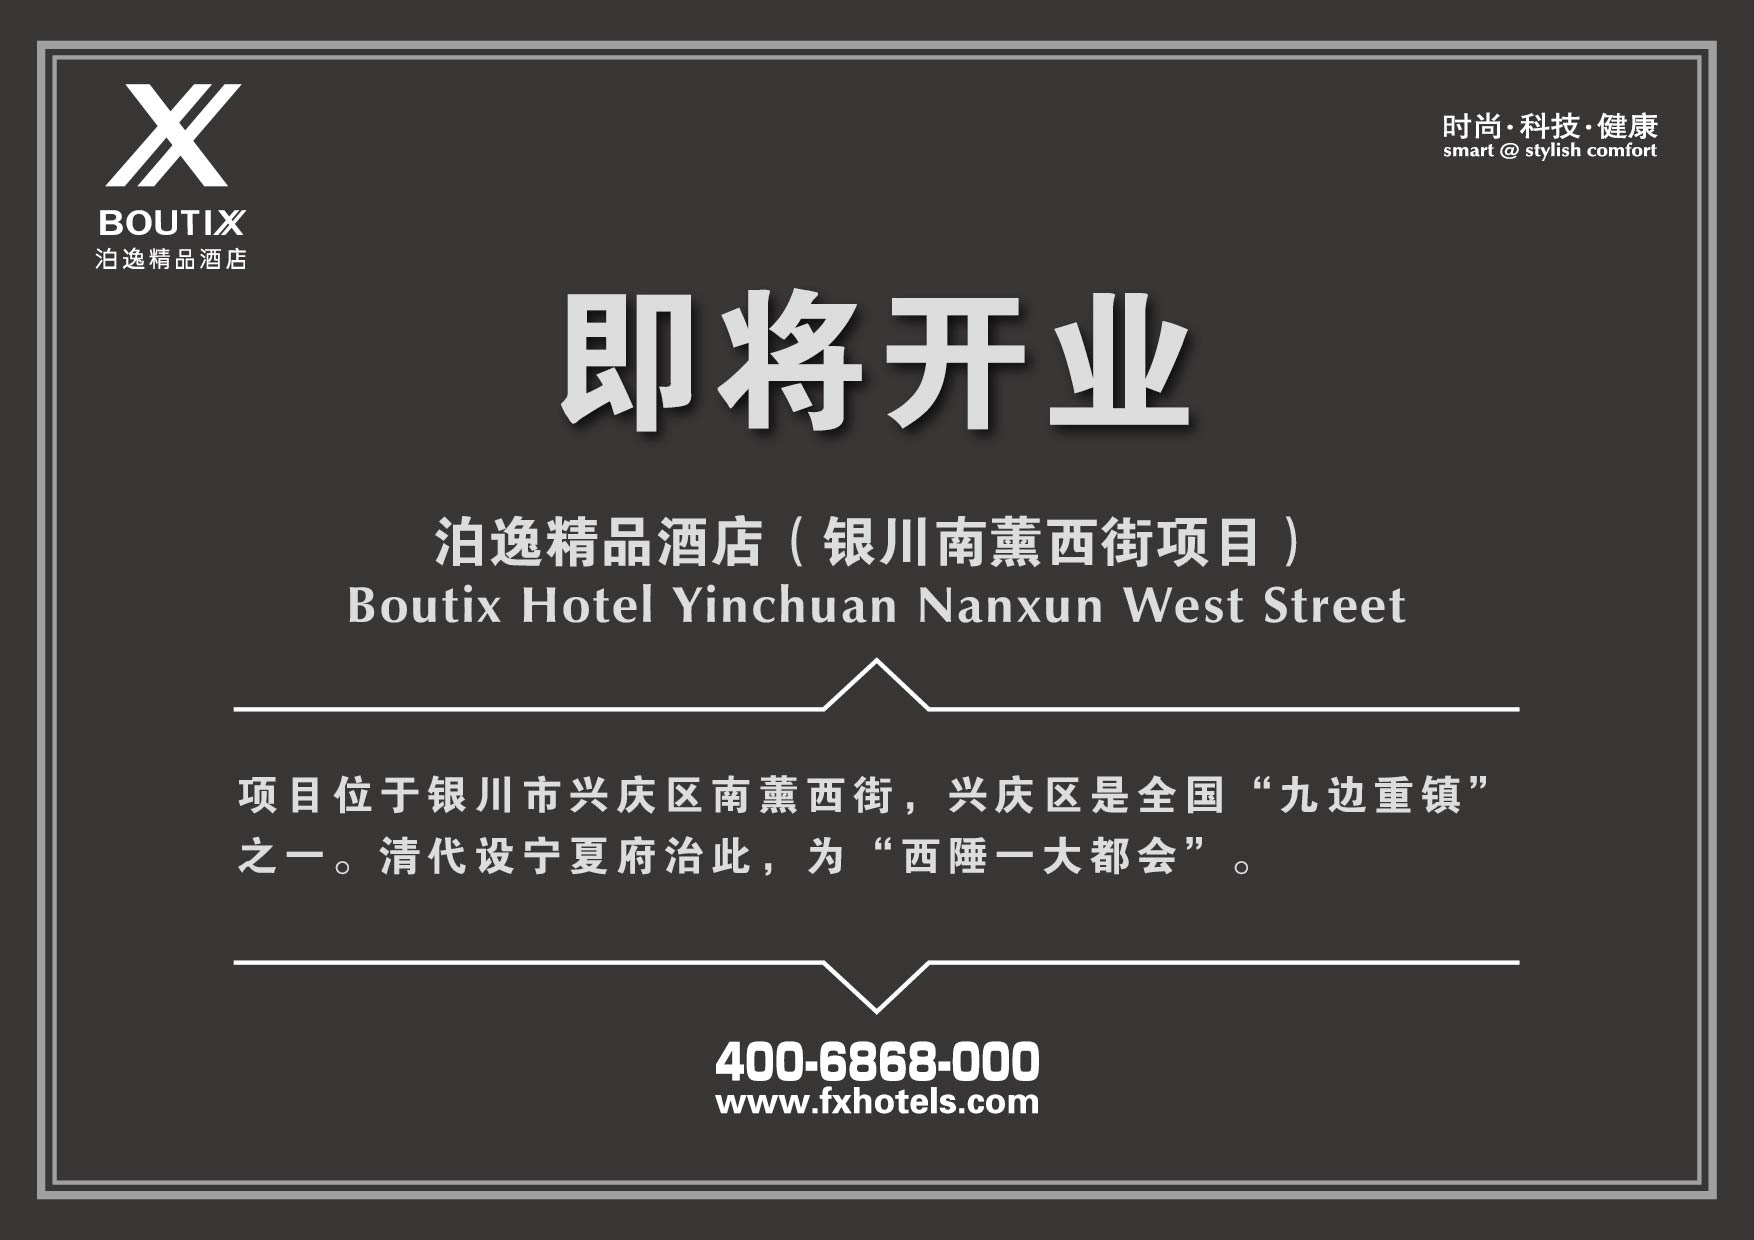 Boutix Hotel Yinchuan Nanxun West Street